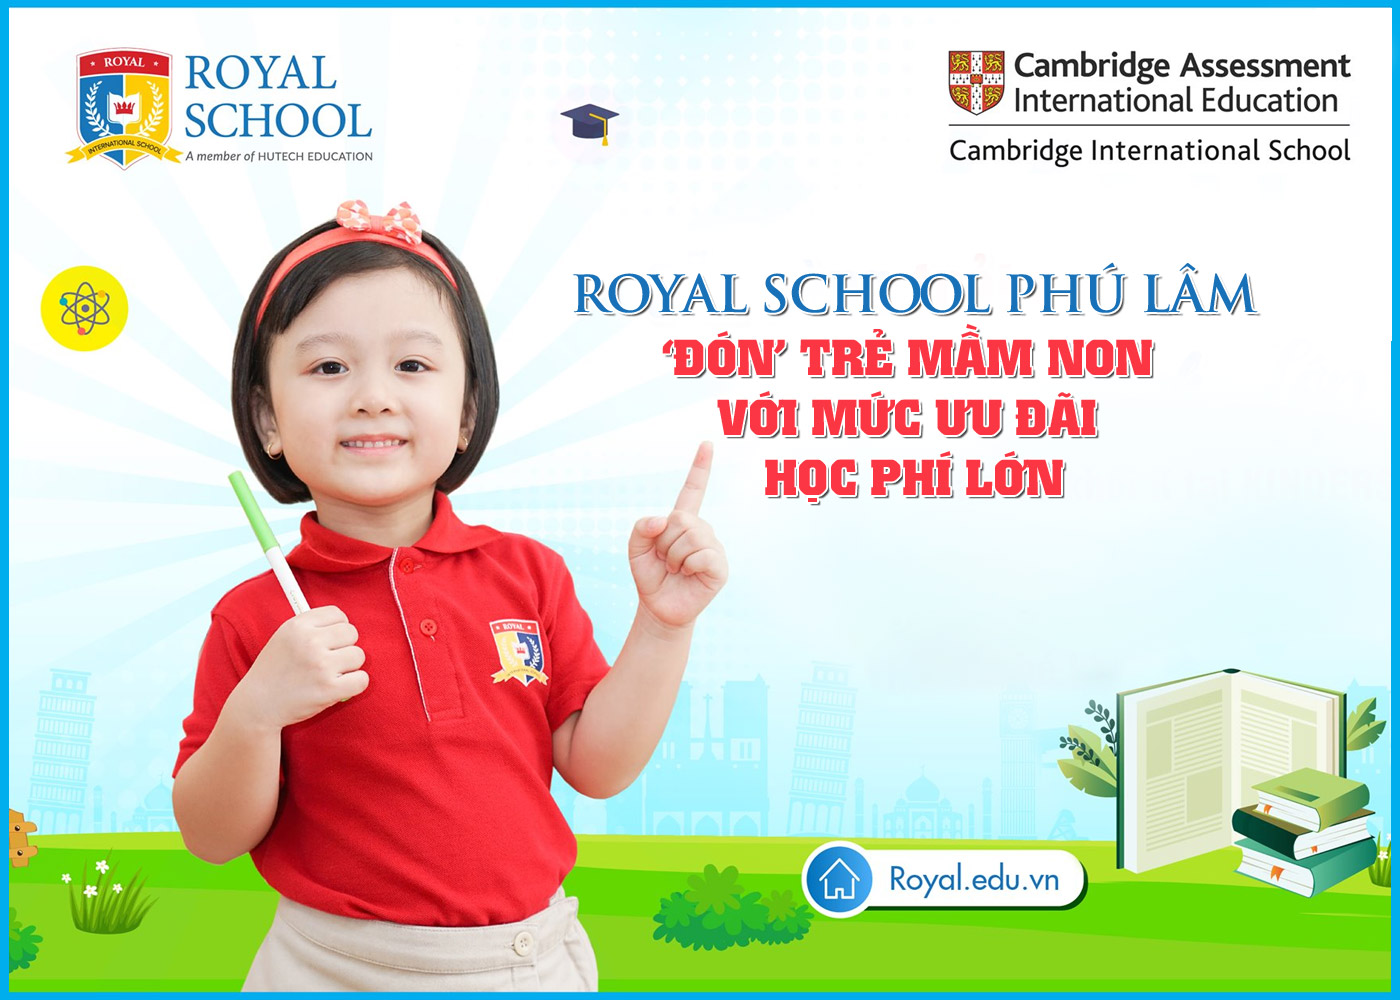 Royal School Phú Lâm đón trẻ mầm non với mức ưu đãi học phí lớn - Ảnh 1